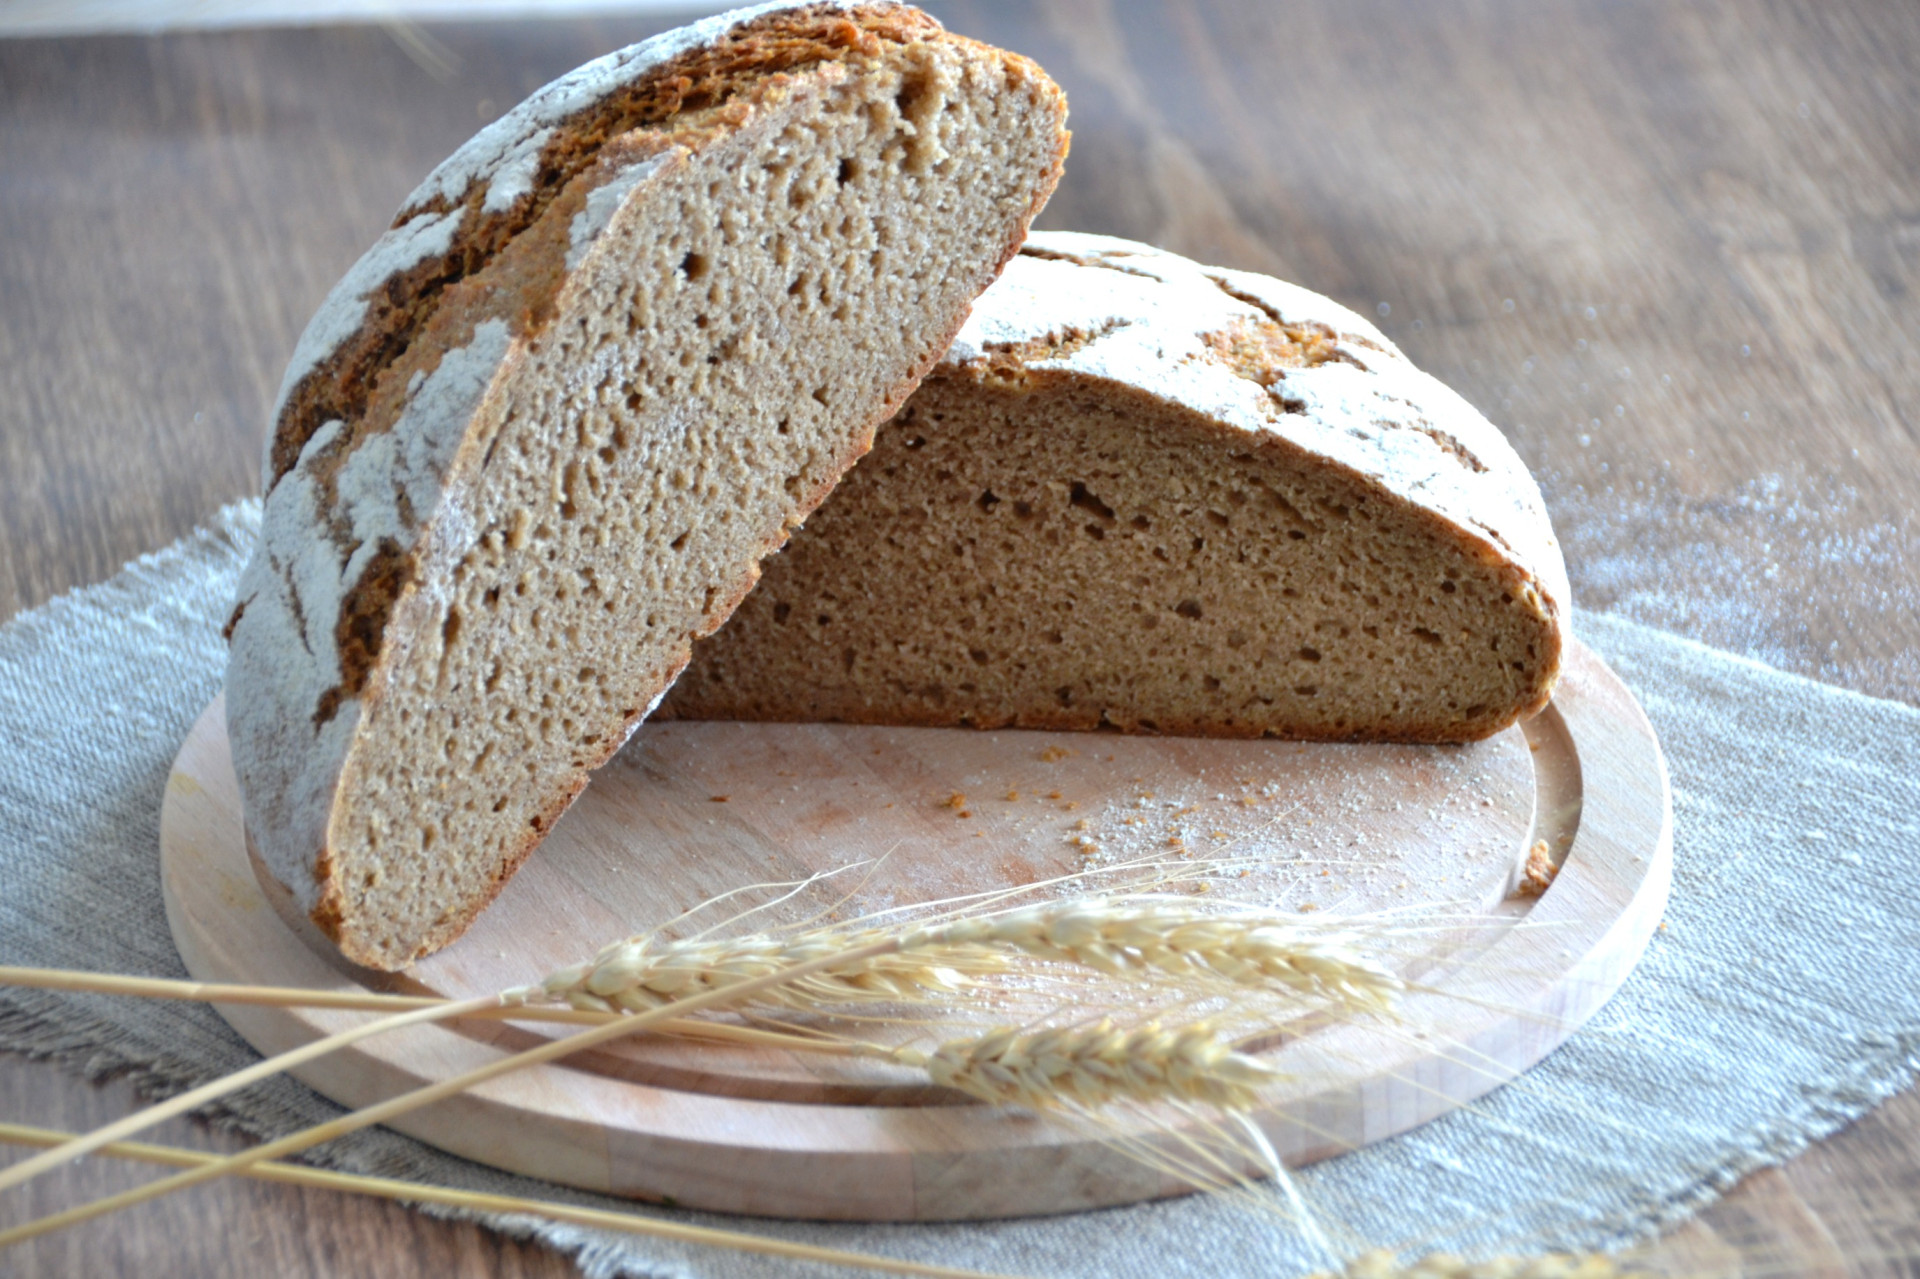 Подовой домашний хлеб. Хлеб Финляндии рейкялейпя. Финский ржаной хлеб на закваске. Финский хлеб на закваске. Финский хлеб "рейкялейпя".